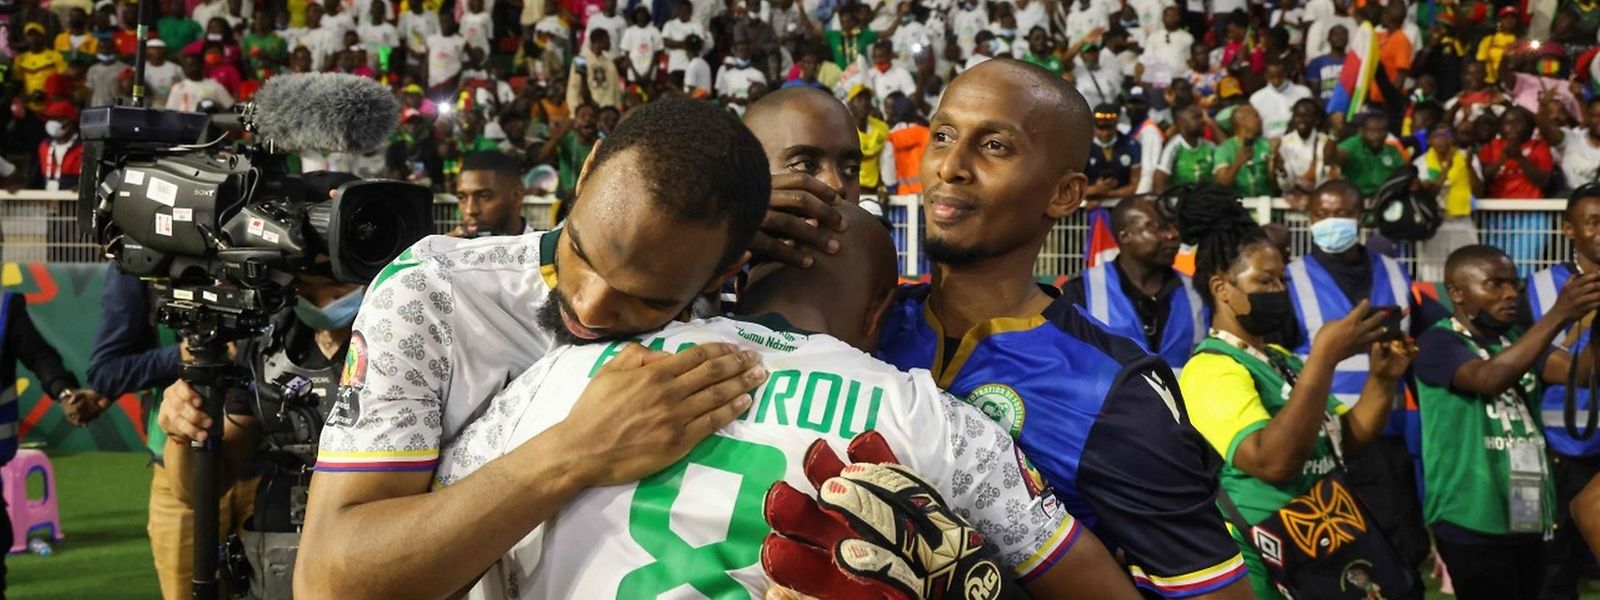 Die Spieler der Komoren trösteten sich gegenseitig nach der Niederlage gegen Kamerun und wussten zu diesem Zeitpunkt noch nichts von der Tragödie vor dem Stadion.